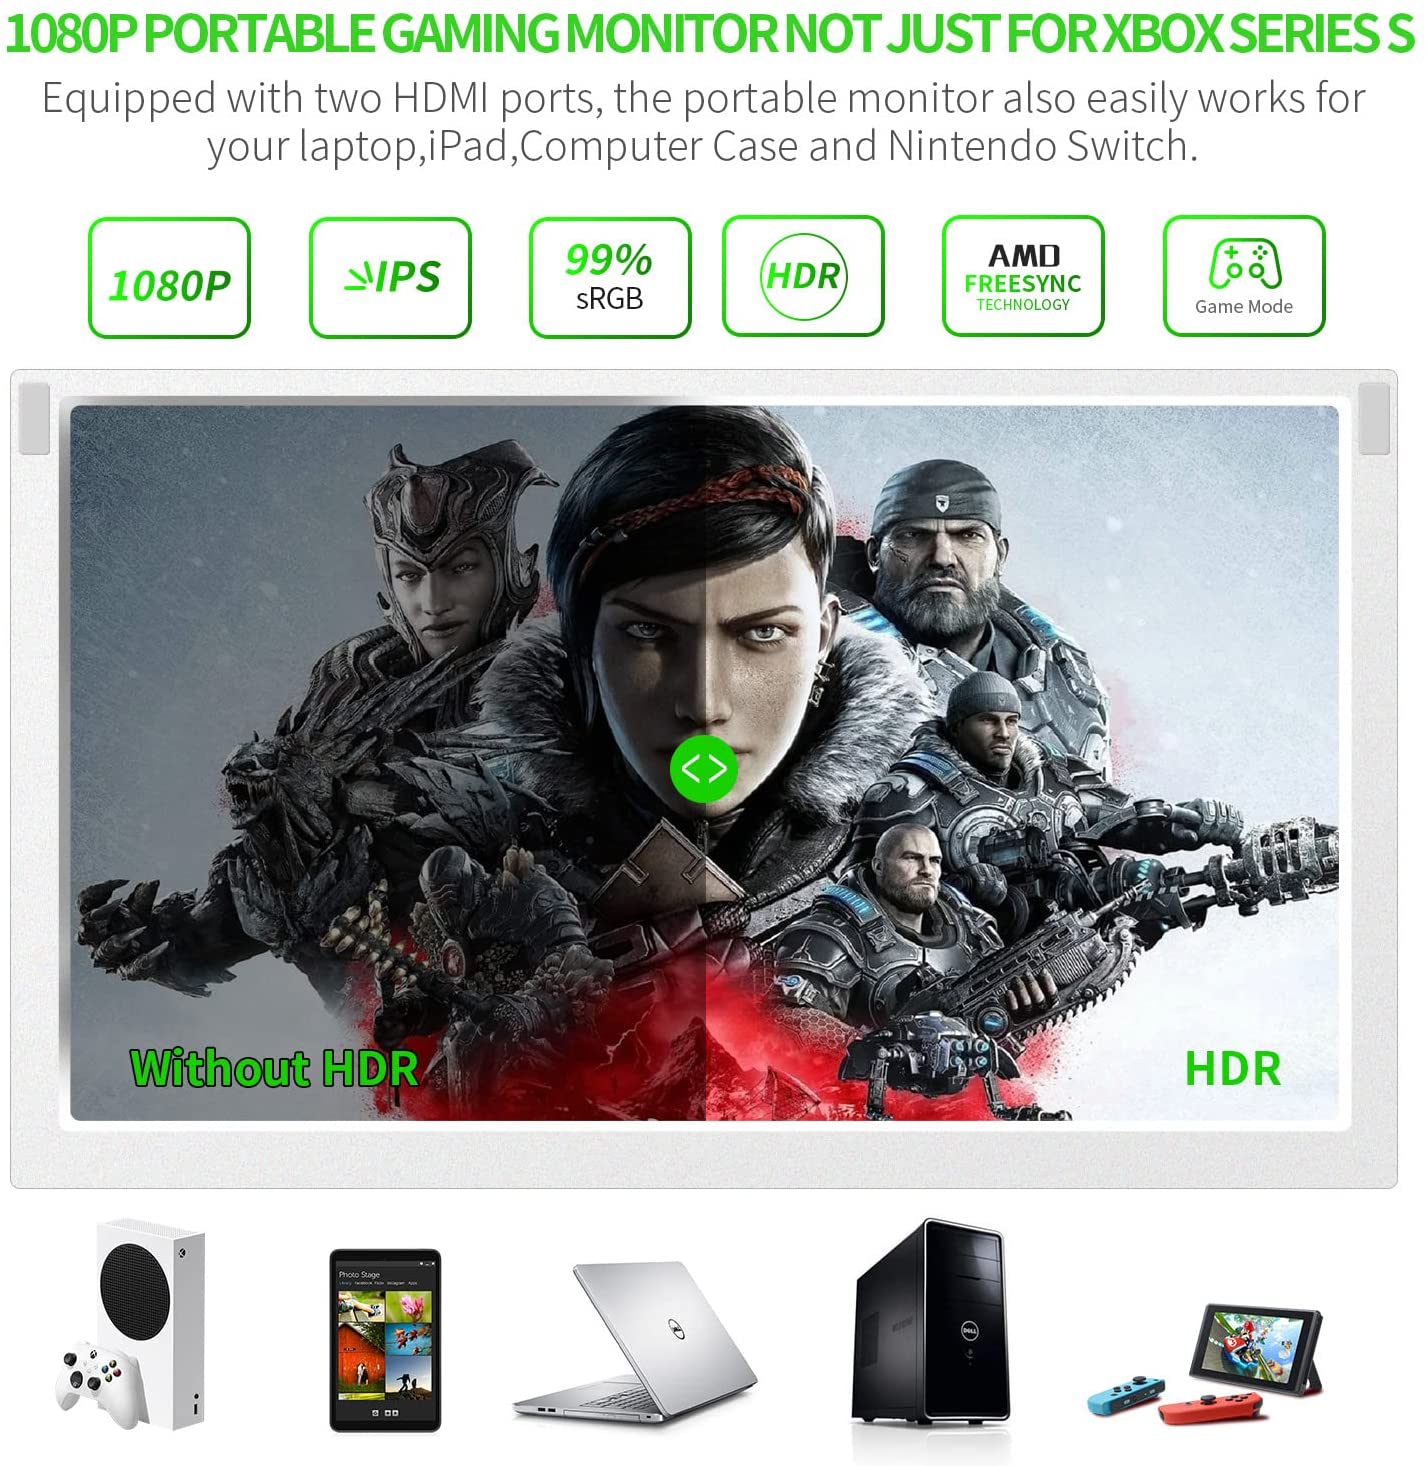 G-STORY Moniteur portable de 31,5 cm pour Xbox Series S 4K Écran IPS pour  Xbox Series S (non inclus) avec deux HDMI, HDR, Freesync Mode de jeu